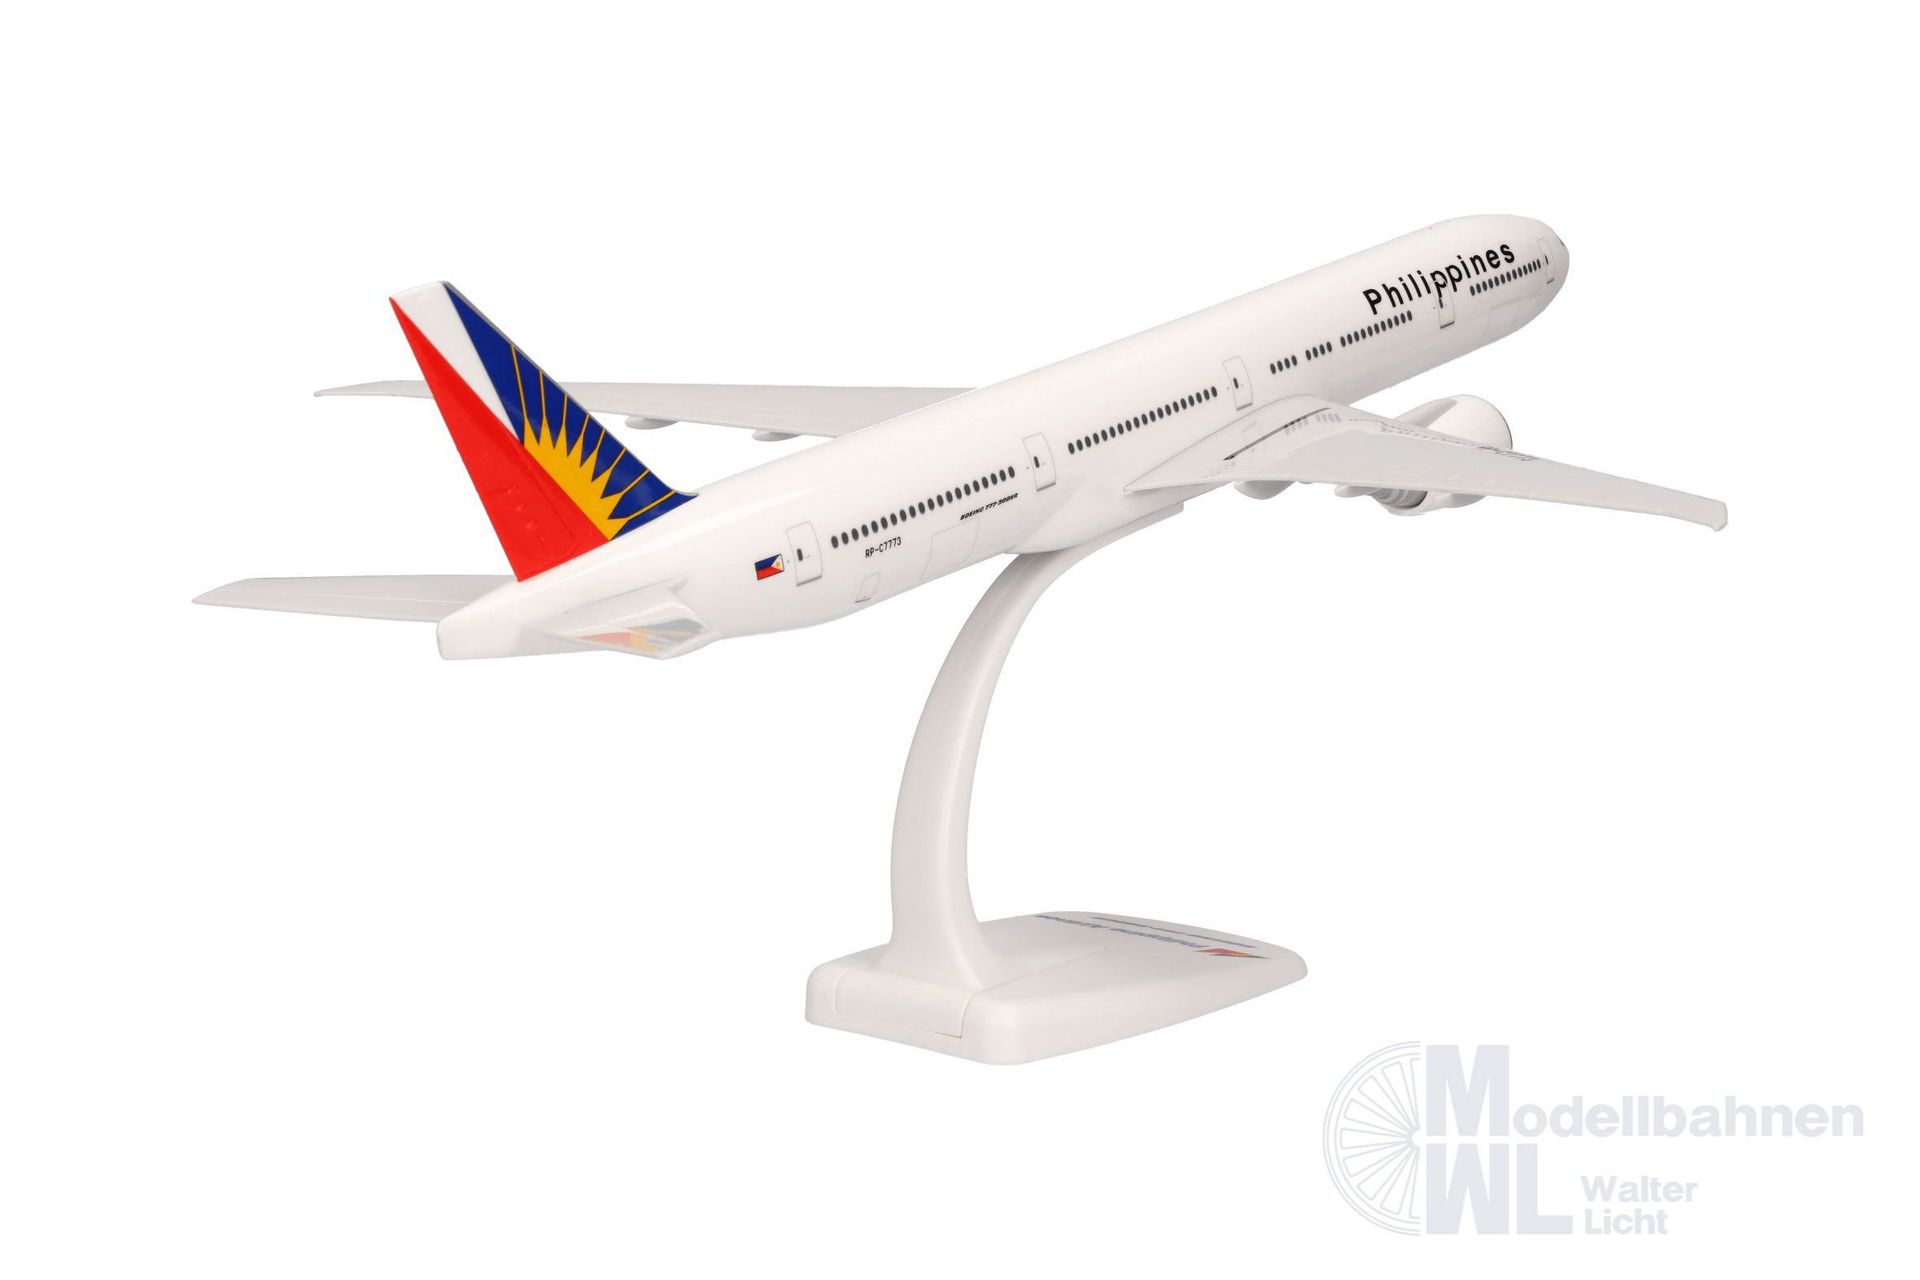 Herpa 613873 - Boeing 777-300ER Philippine Airlines 1:200